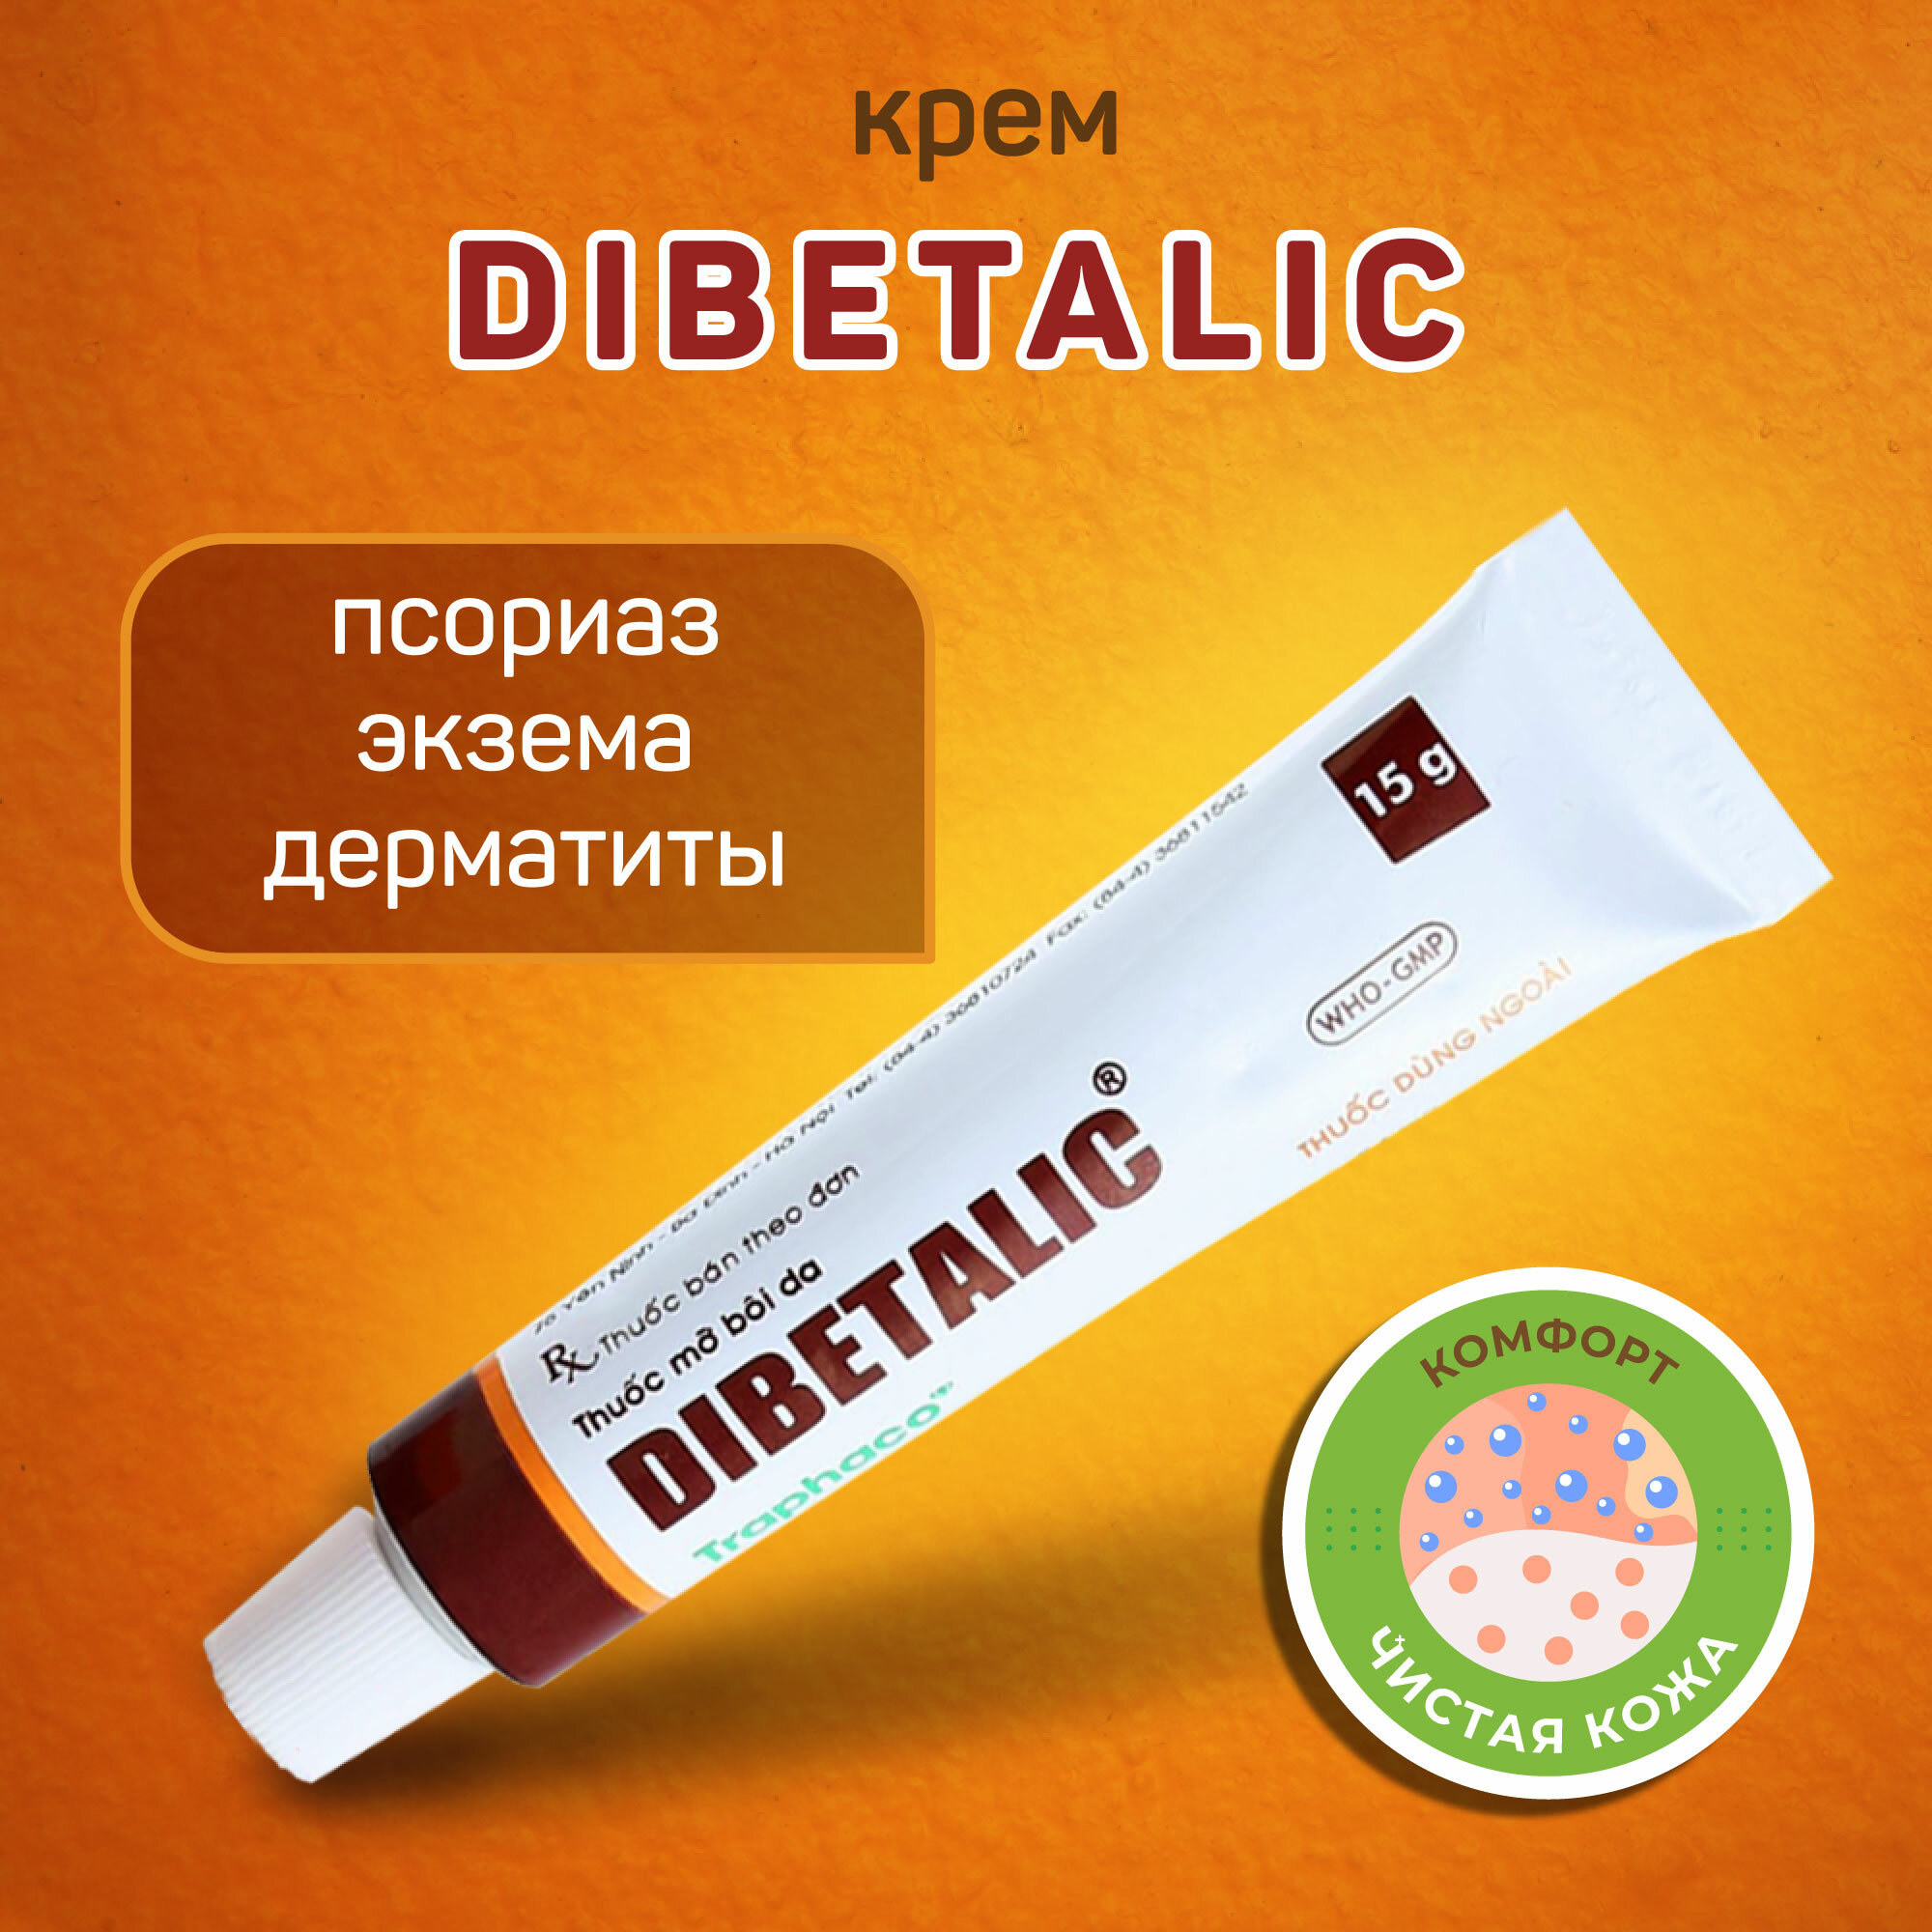 Dibetalic крем / мазь Дибеталик от дерматитов, экземы, псориаза